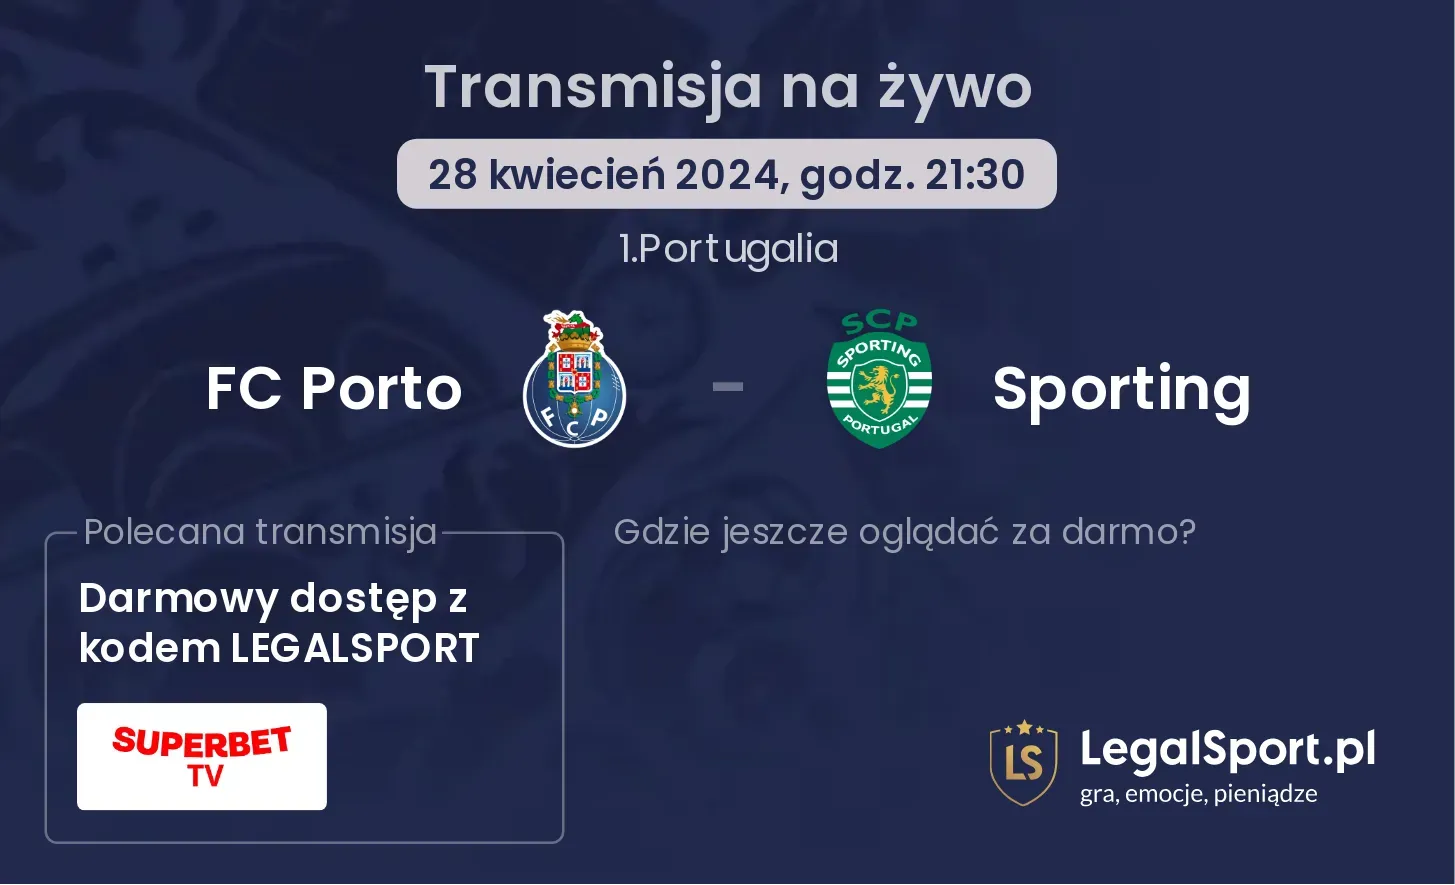 FC Porto - Sporting transmisja na żywo